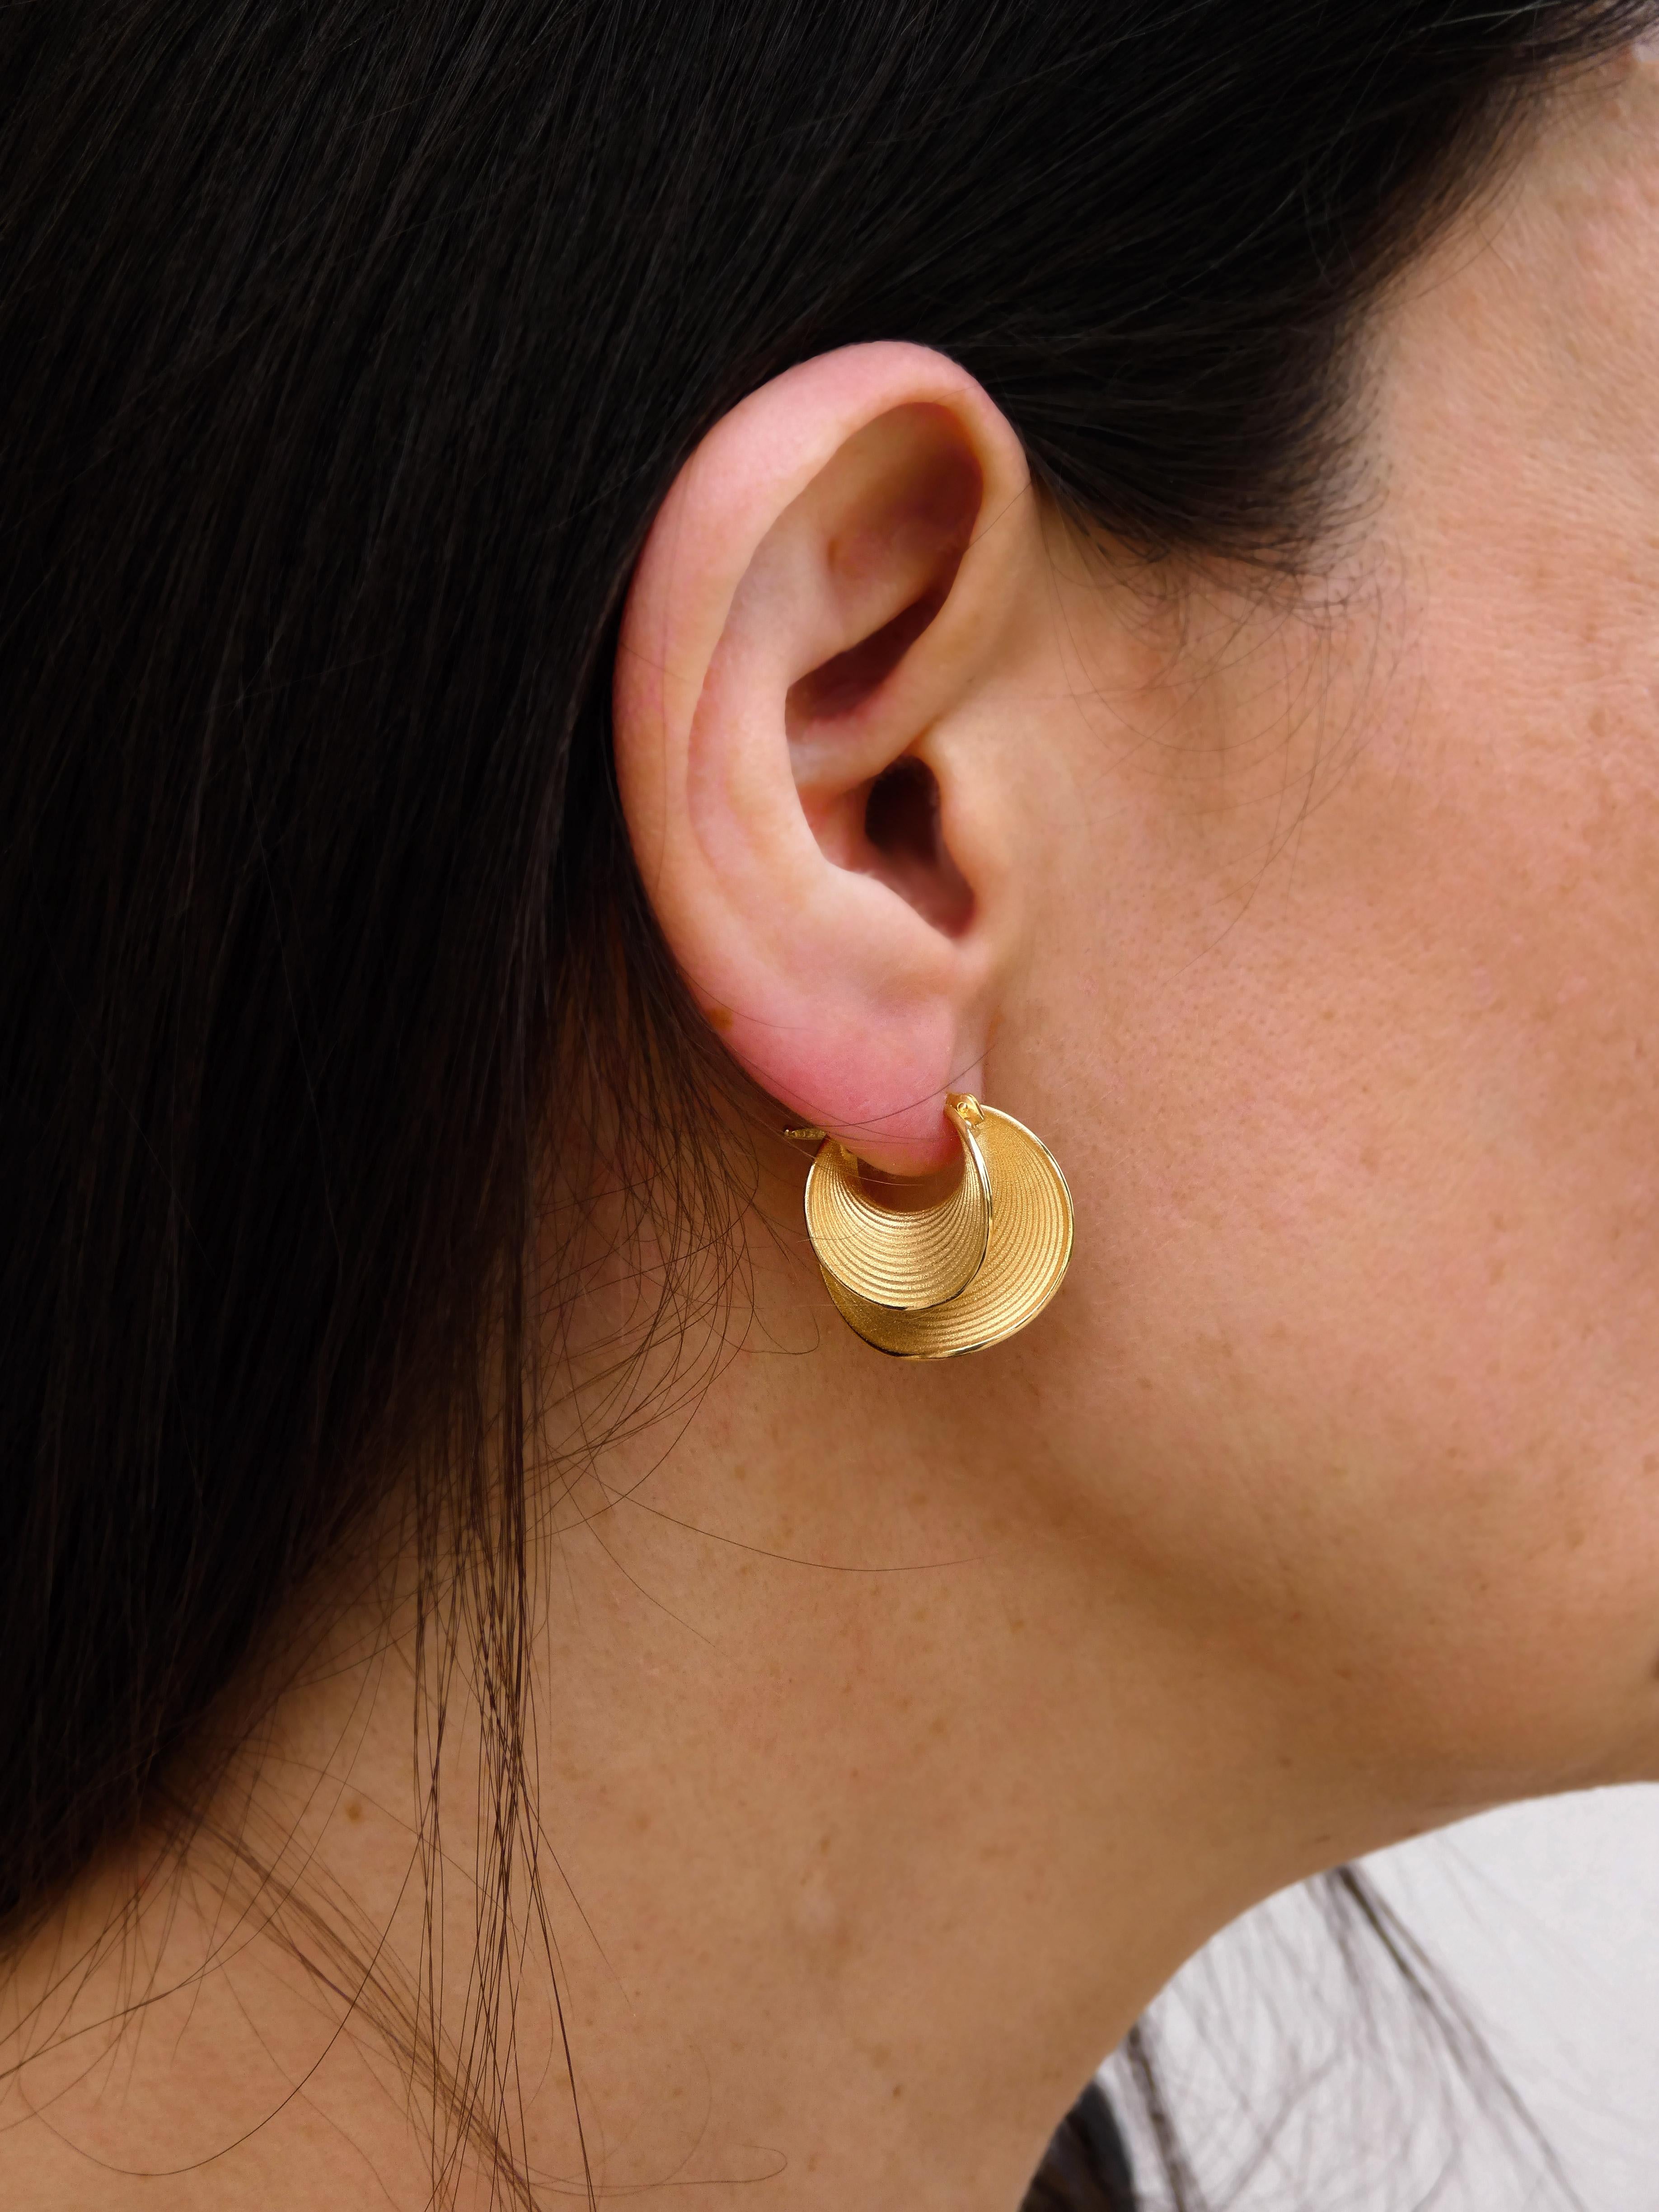 Oltremare Gioielli Gold Hoop Earrings, 18 karat Italian gold fine jewelry  For Sale 2